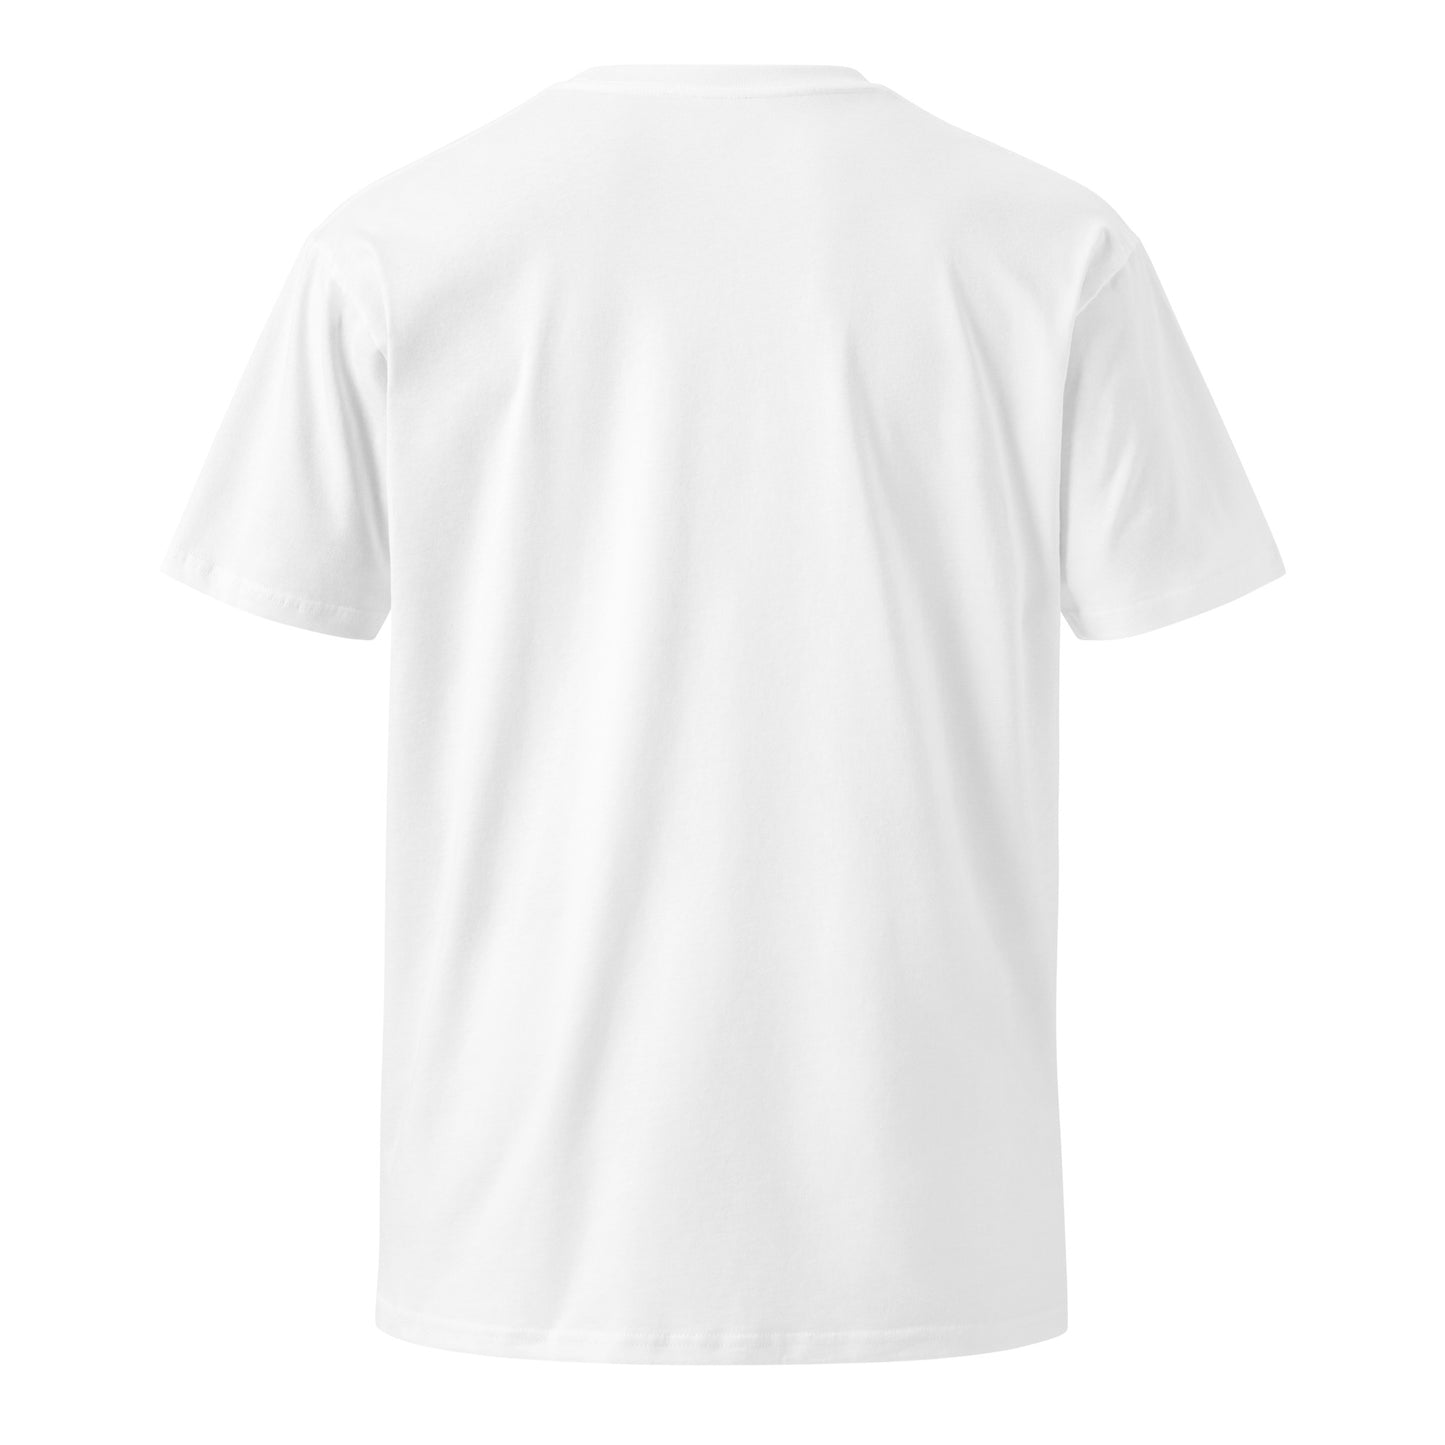 Freeze Warning Premium Shirt (Unisex)